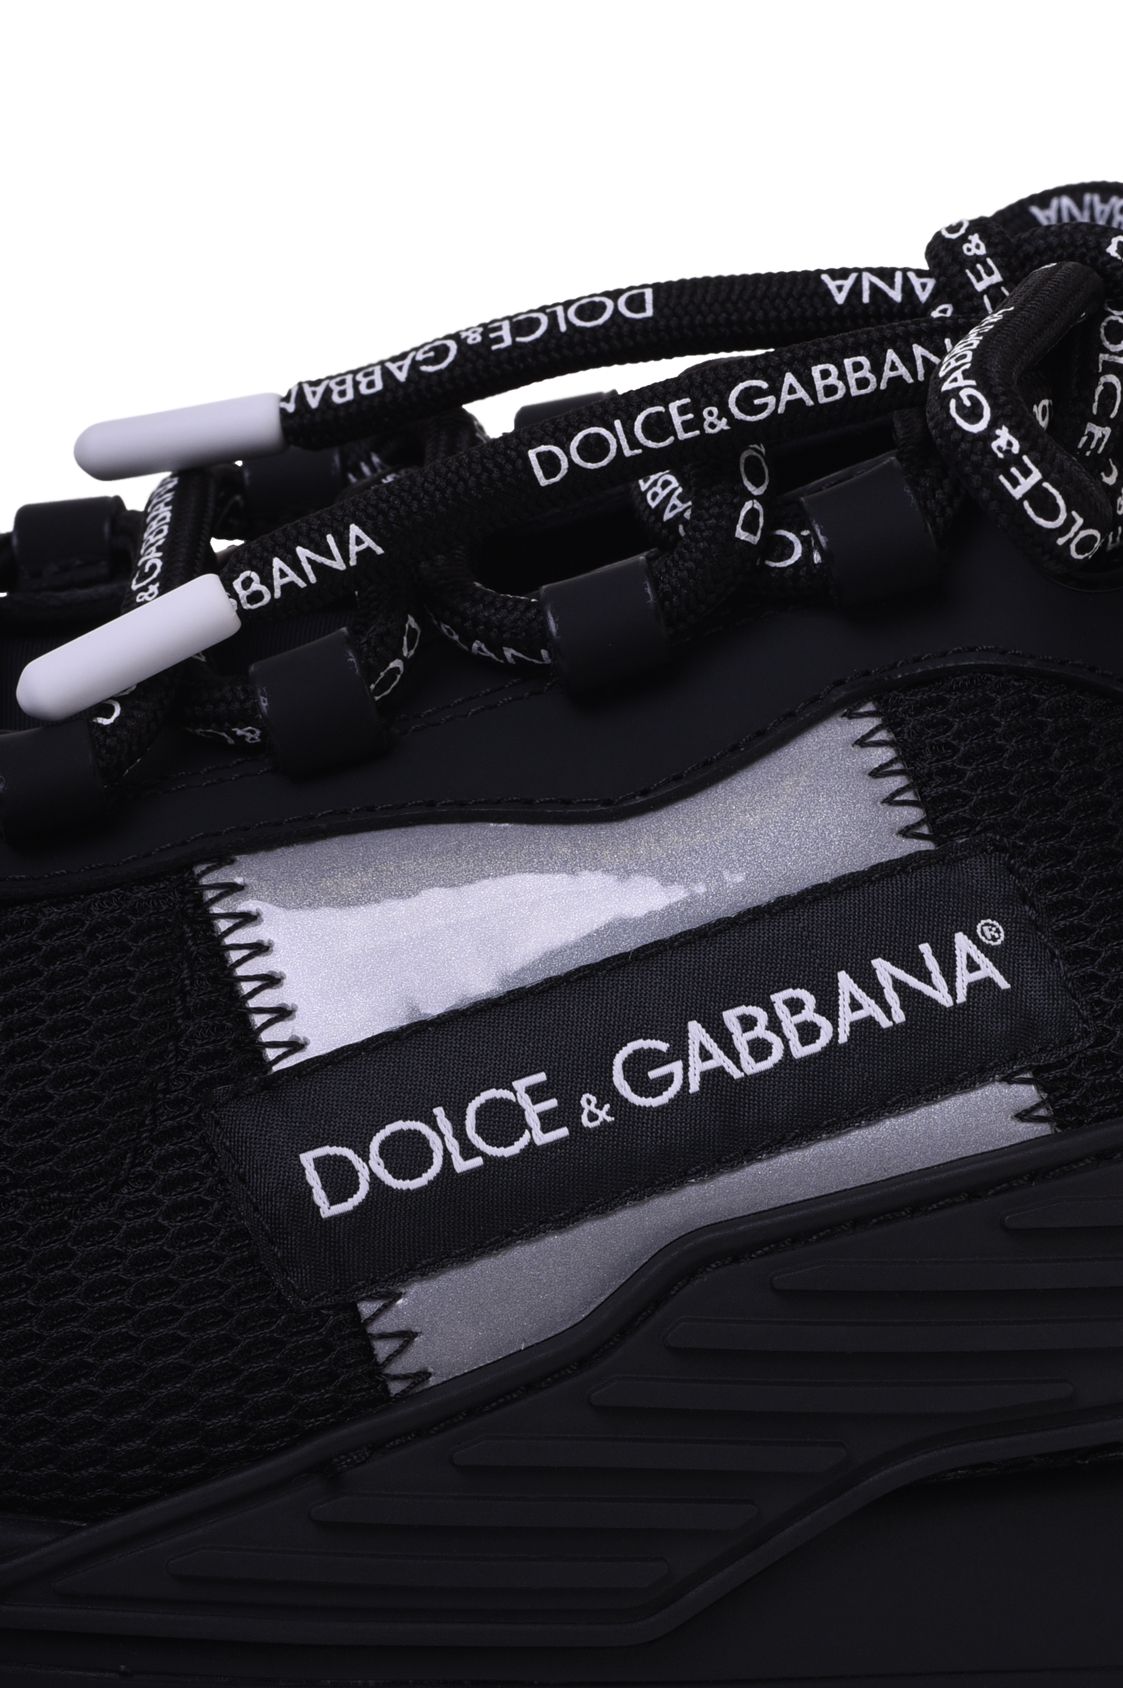 Кроссовки DOLCE & GABBANA CS1769 AJ968, цвет: Черный, Мужской